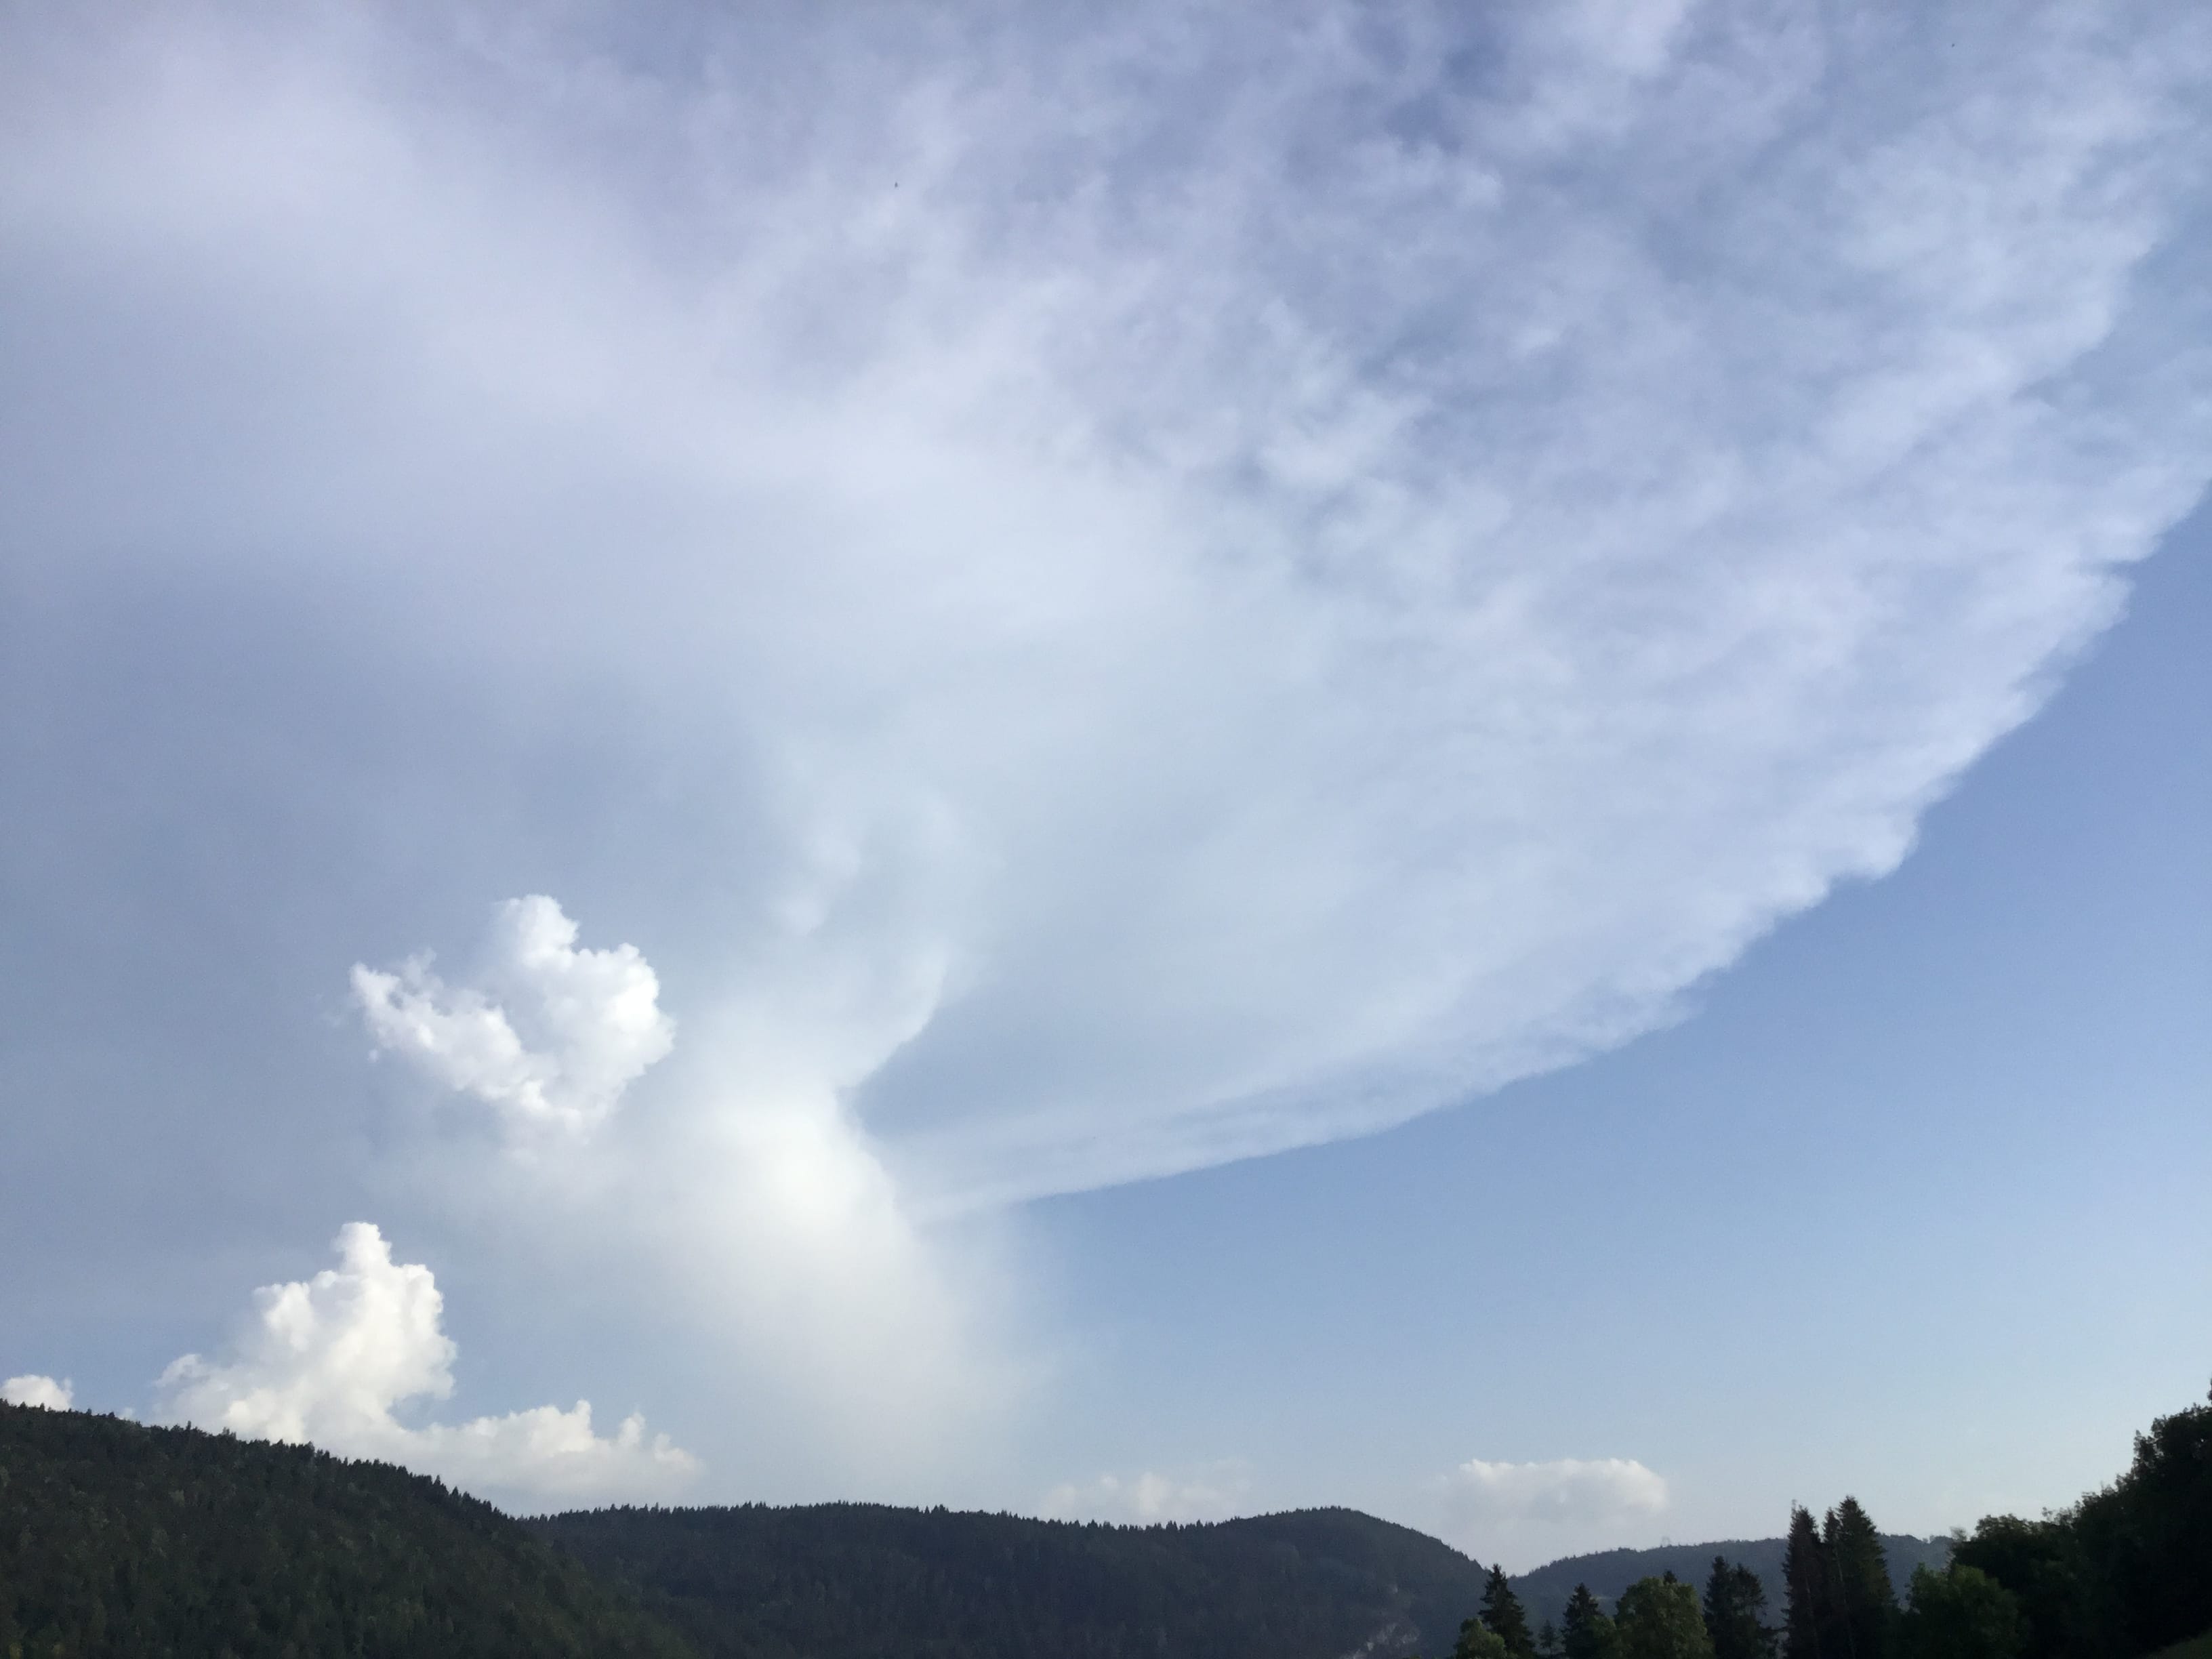 Un cumulonimbus vu du haut-Jura mais situé sur le Pays de Gex (01) a quand même éclot dans cette canicule. - 27/06/2019 19:22 - Olivier Julian